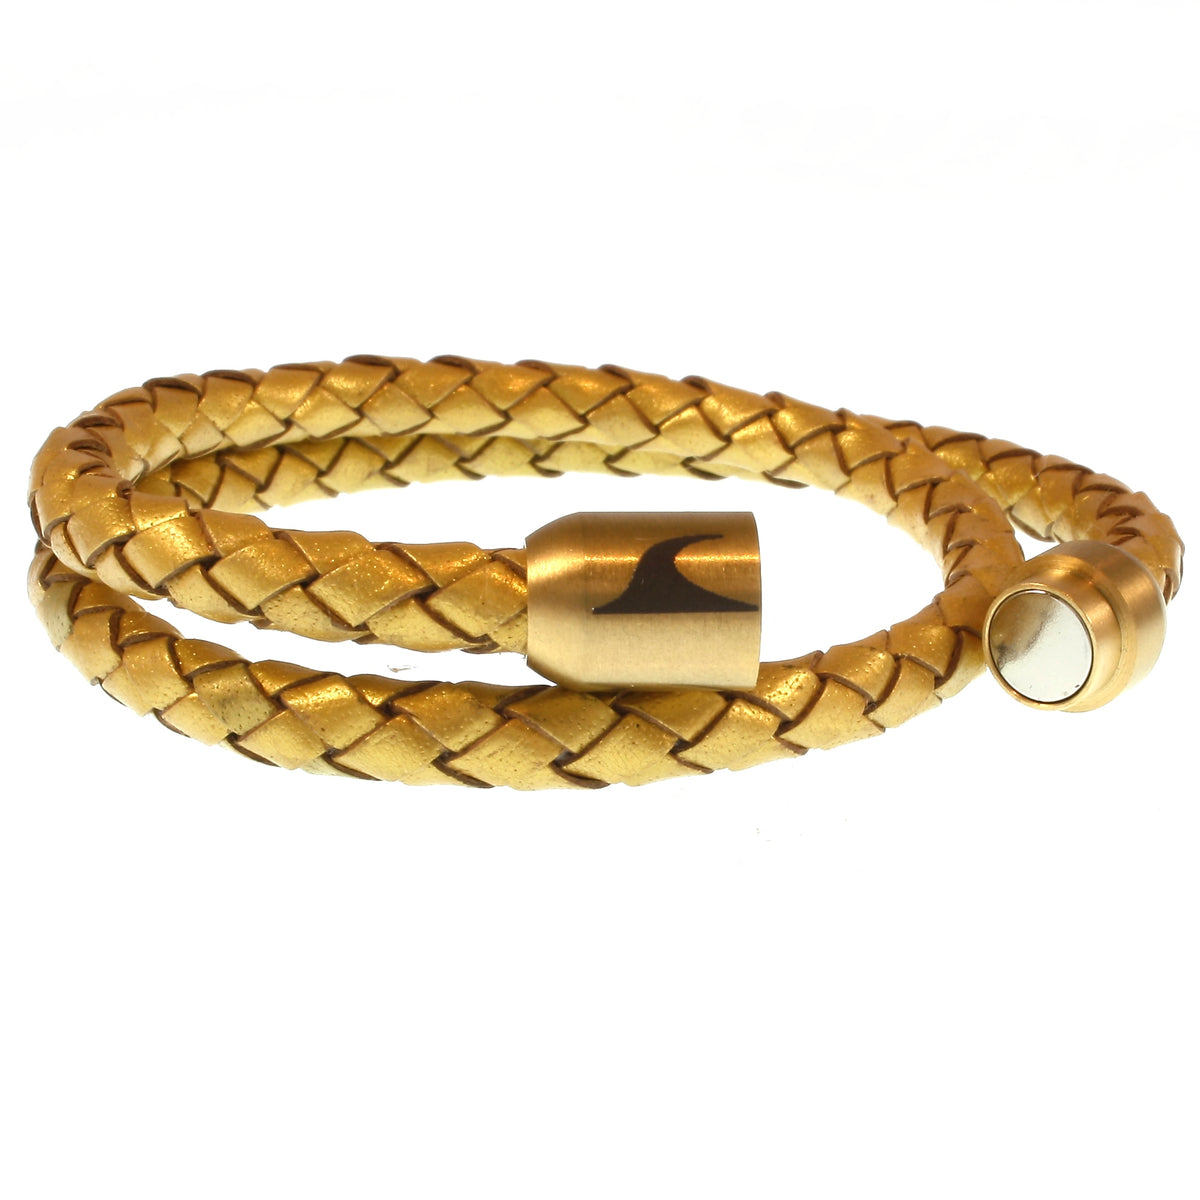 Leder-Armband-Damen-hawaii-gold-geflochten-Edelstahlverschluss-offen-wavepirate-shop-f